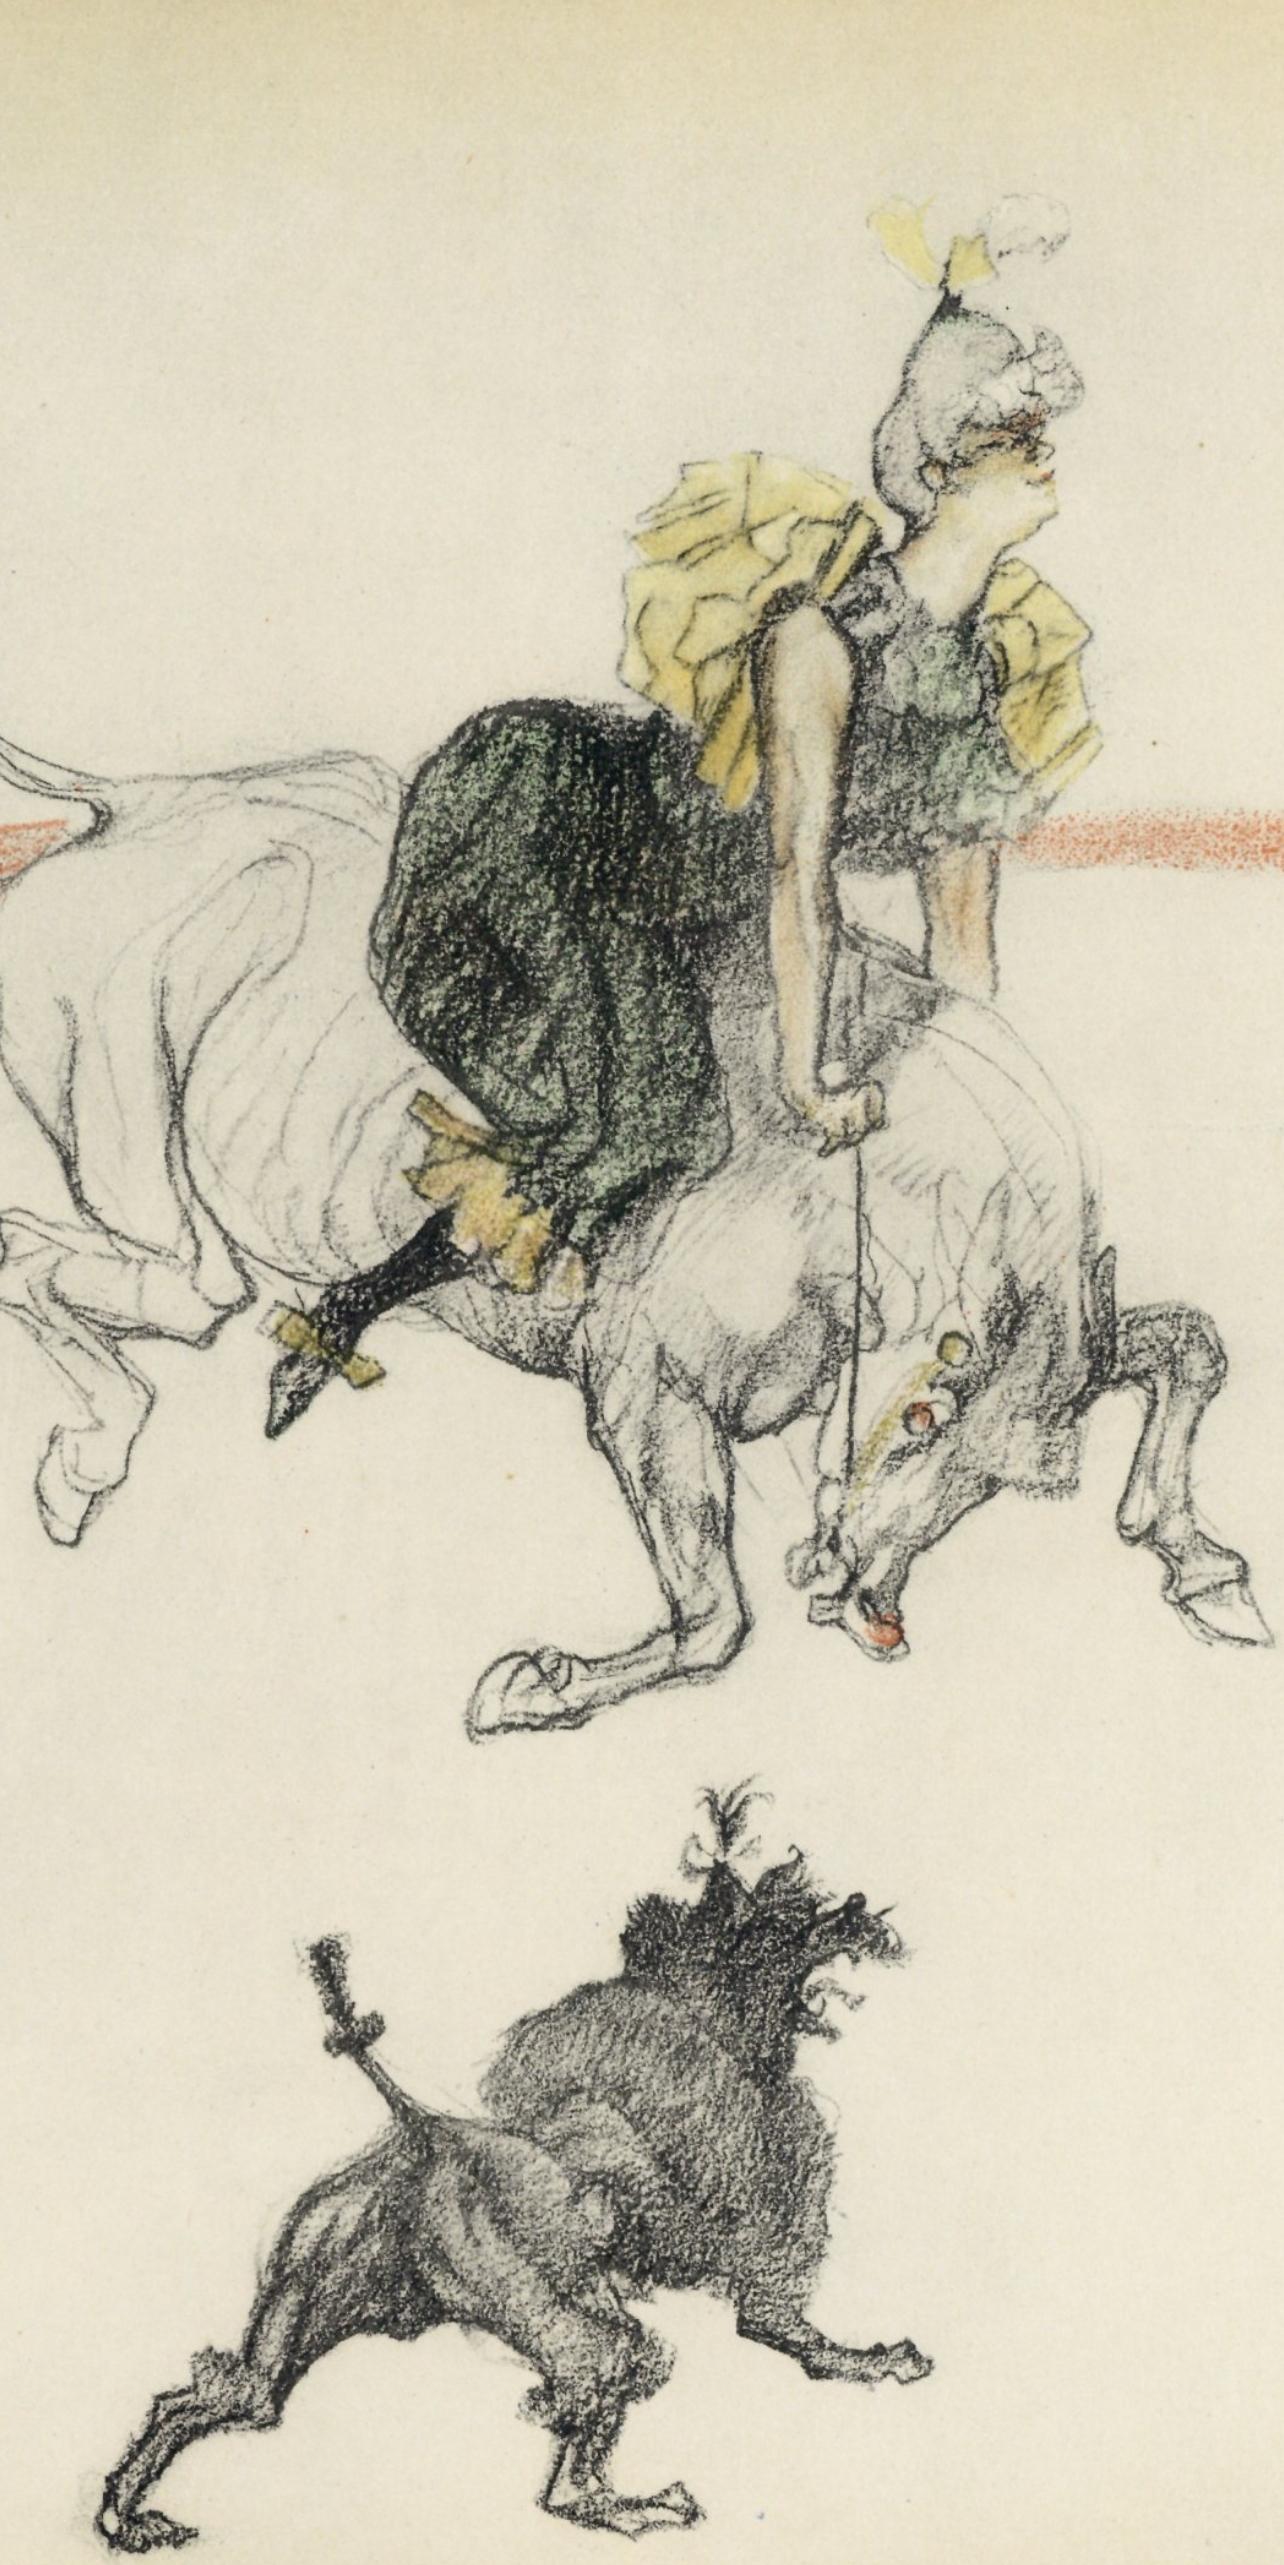 Toulouse-Lautrec, Dans les coulisses, The Circus by Toulouse-Lautrec (after) - Print by Henri de Toulouse-Lautrec